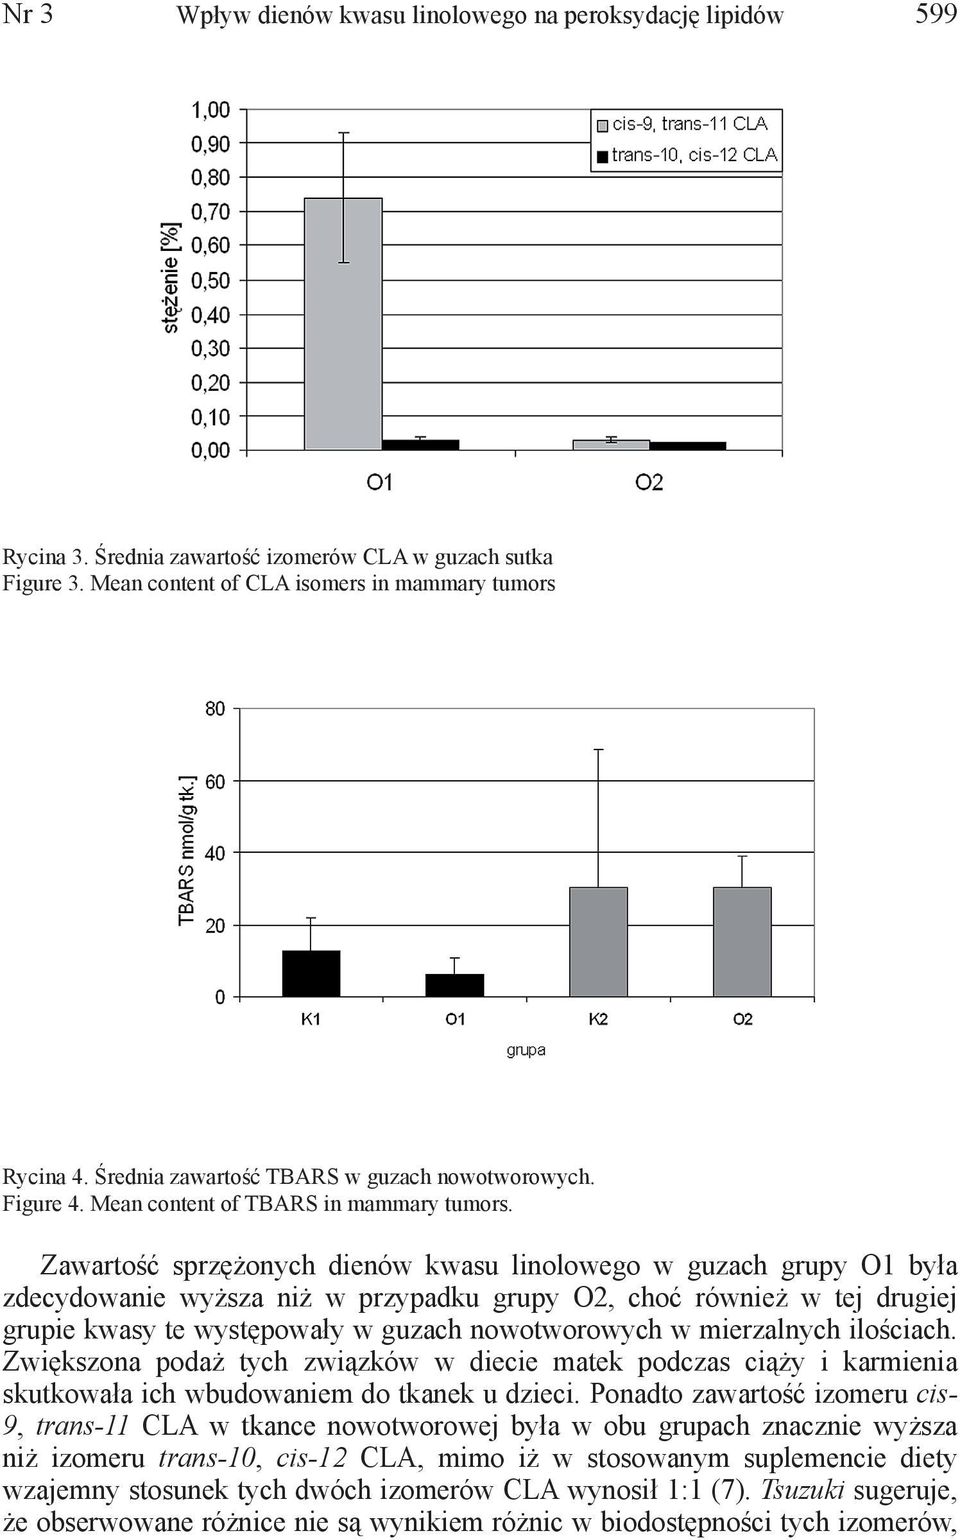 Zawartość sprzężonych dienów kwasu linolowego w guzach grupy O1 była zdecydowanie wyższa niż w przypadku grupy O2, choć również w tej drugiej grupie kwasy te występowały w guzach nowotworowych w